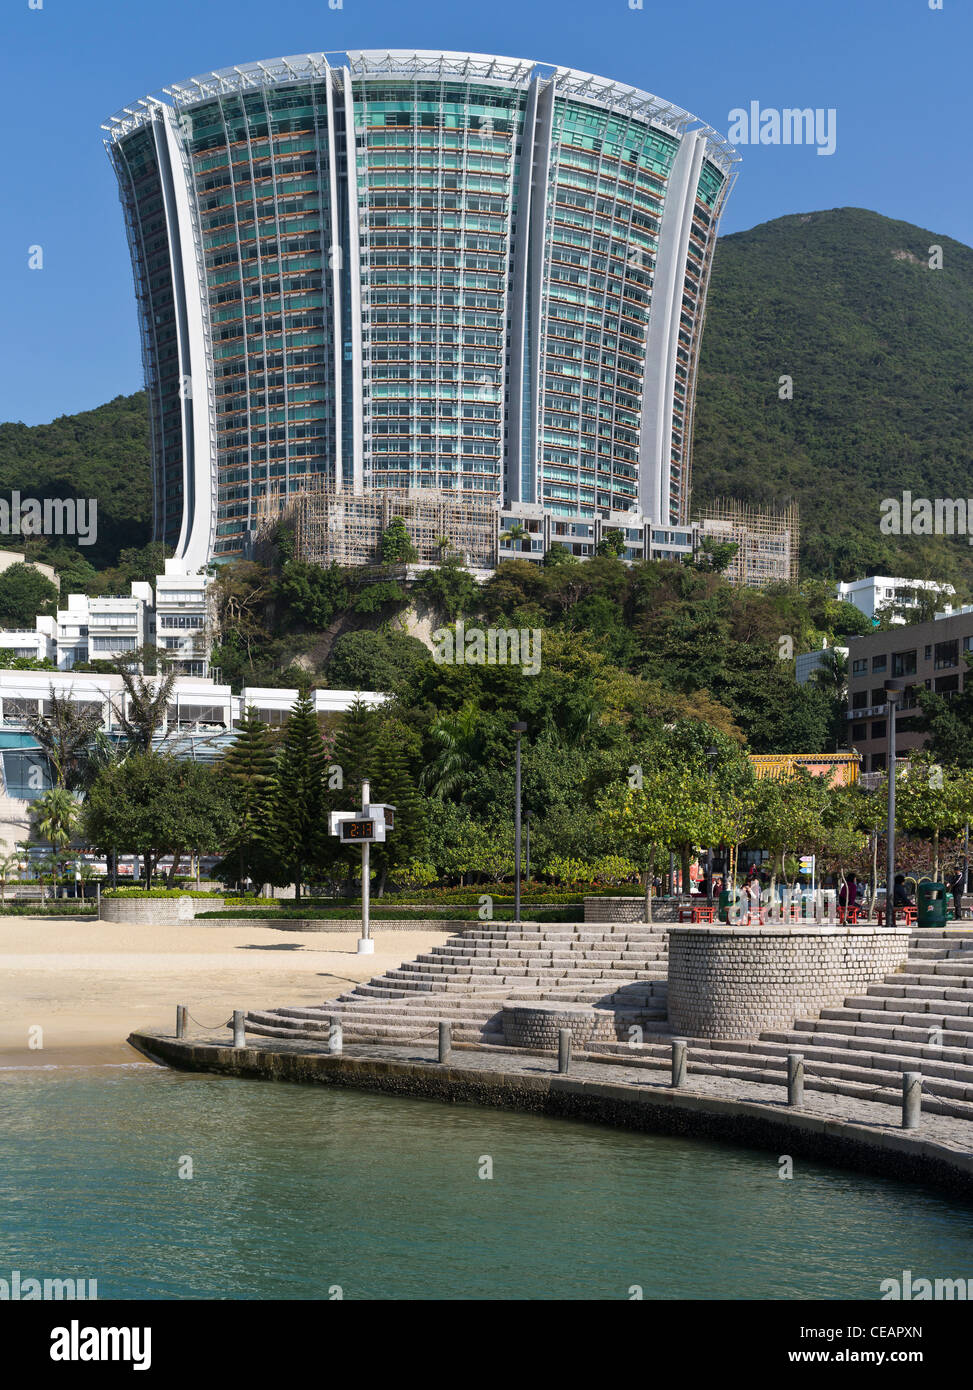 dh REPULSE BAY HONG KONG Luxus-Immobilien Hochhaus-Apartment-Wohnungen moderne china Architektur Häuser hk Gebäude Insel Stockfoto